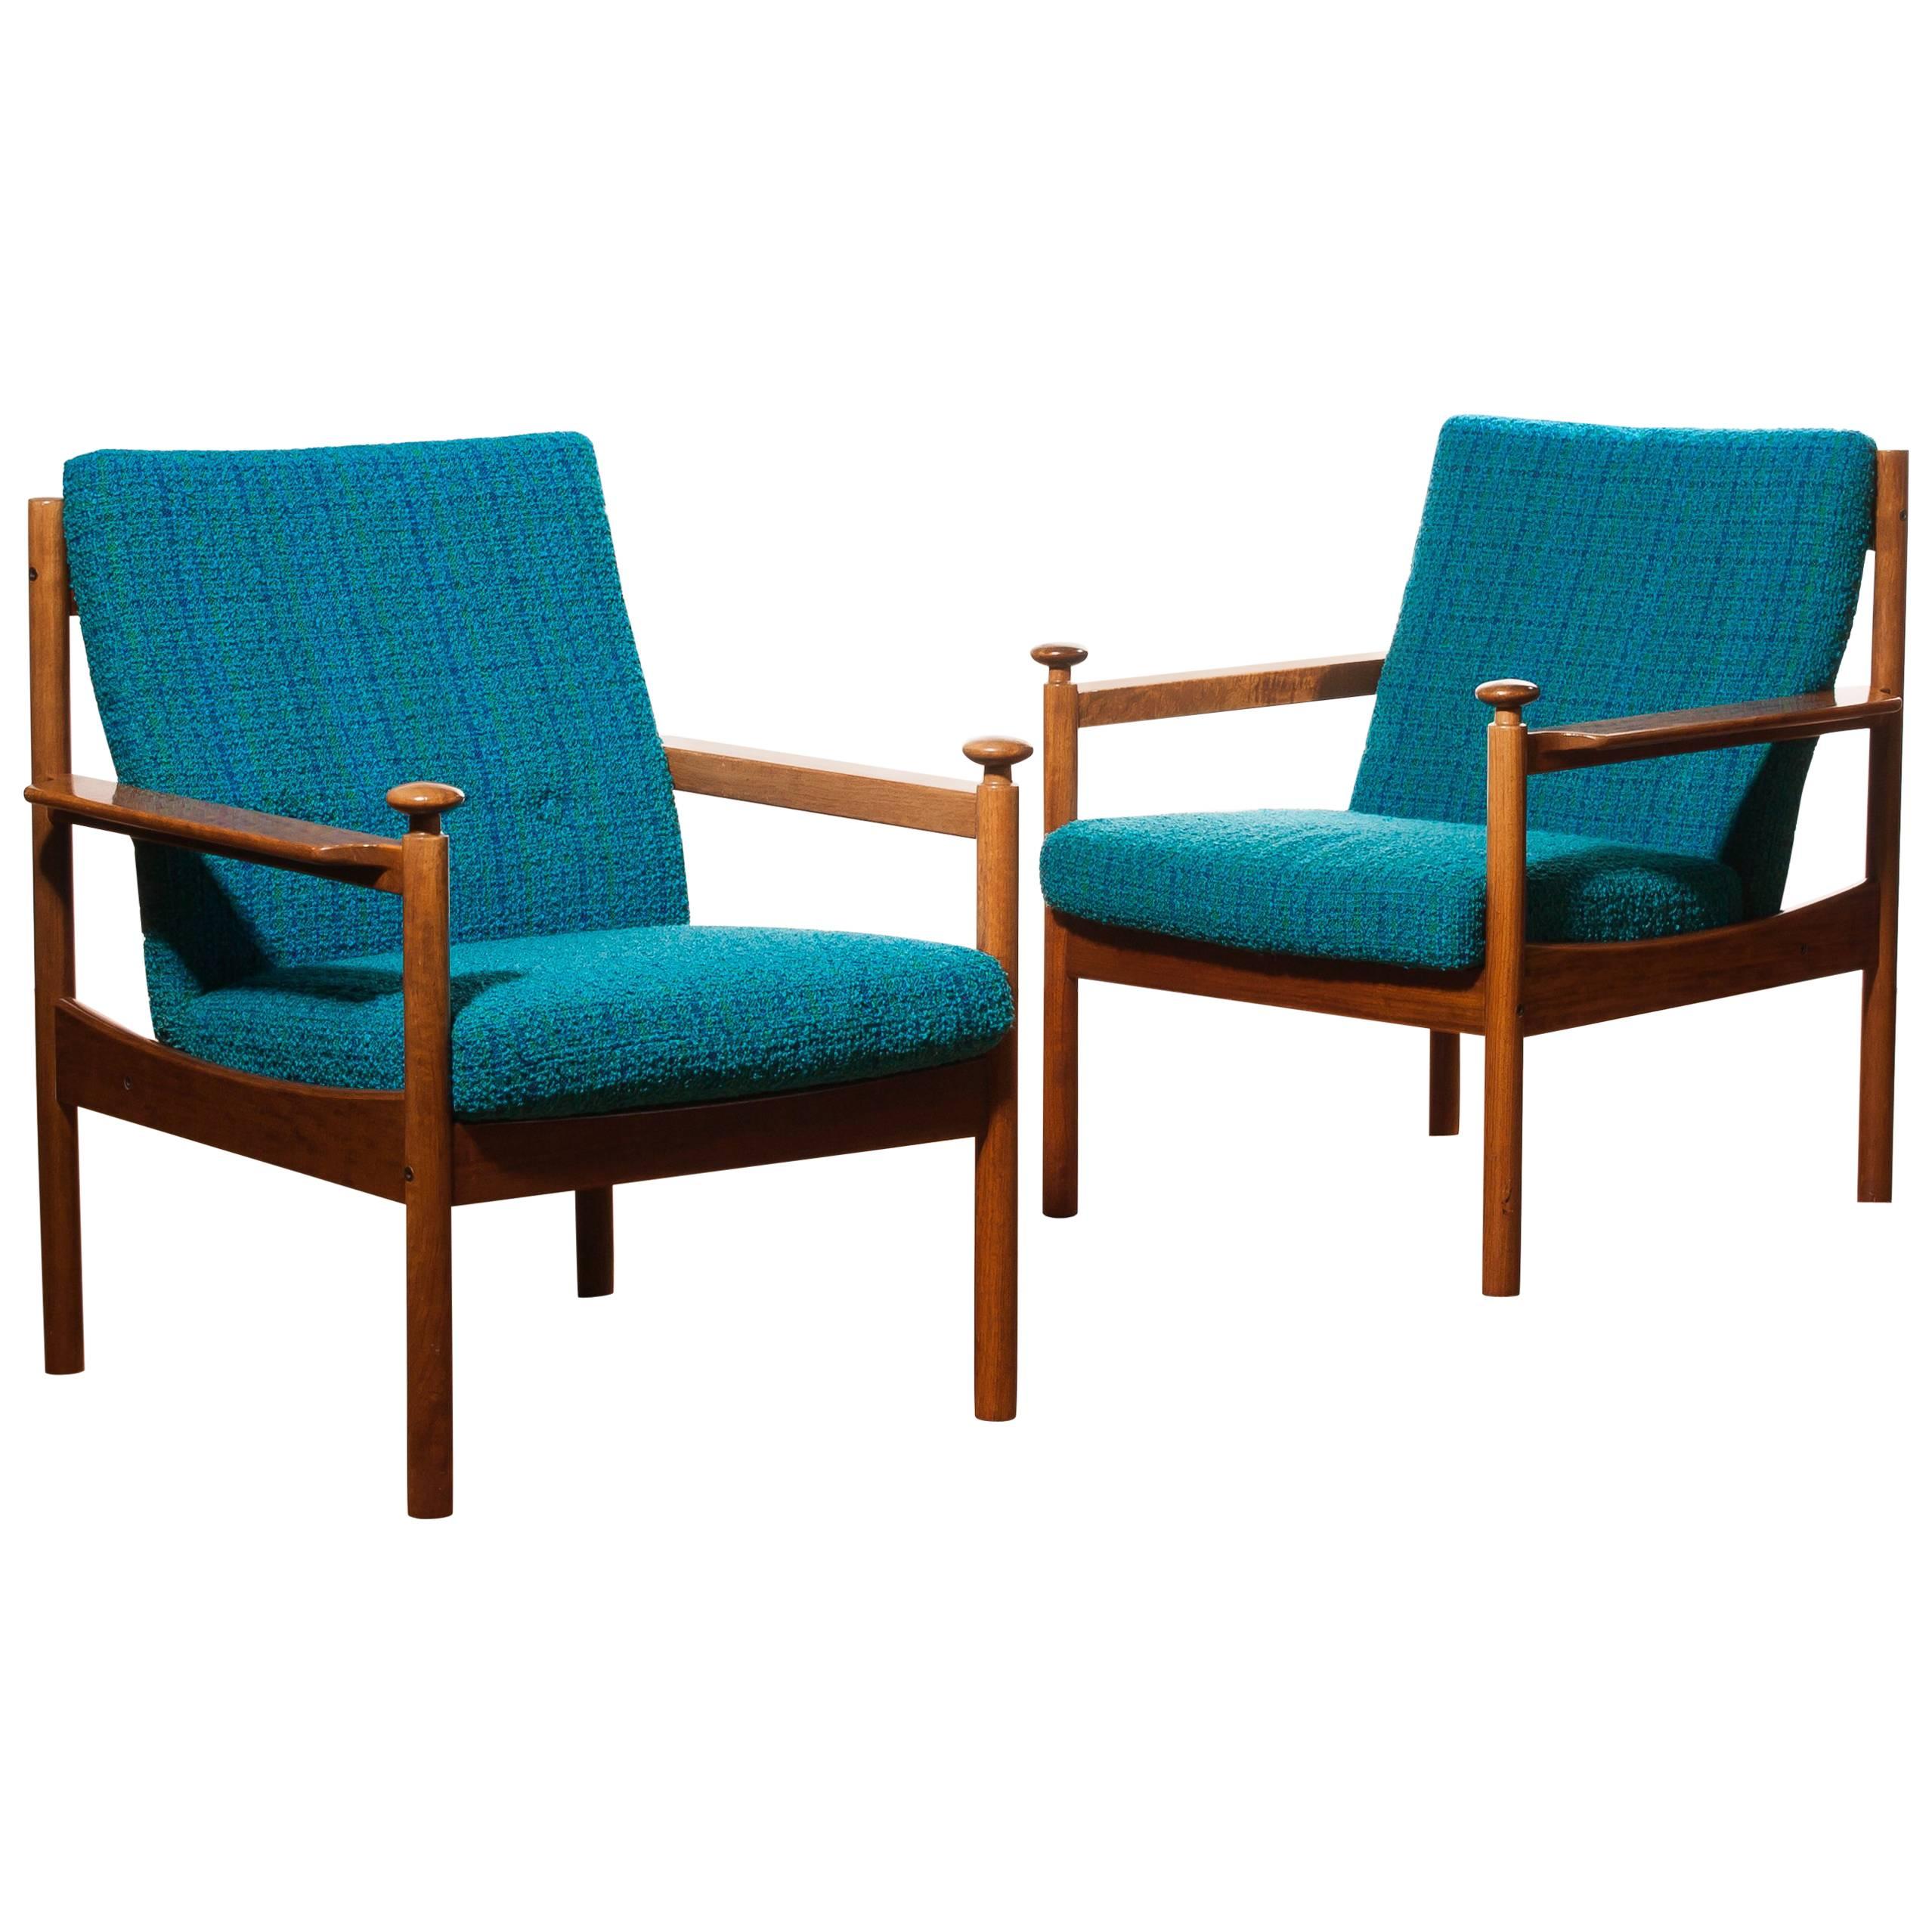 1950s, a Pair of Chairs by Torbjørn Afdal for Sandvik & Co Mobler